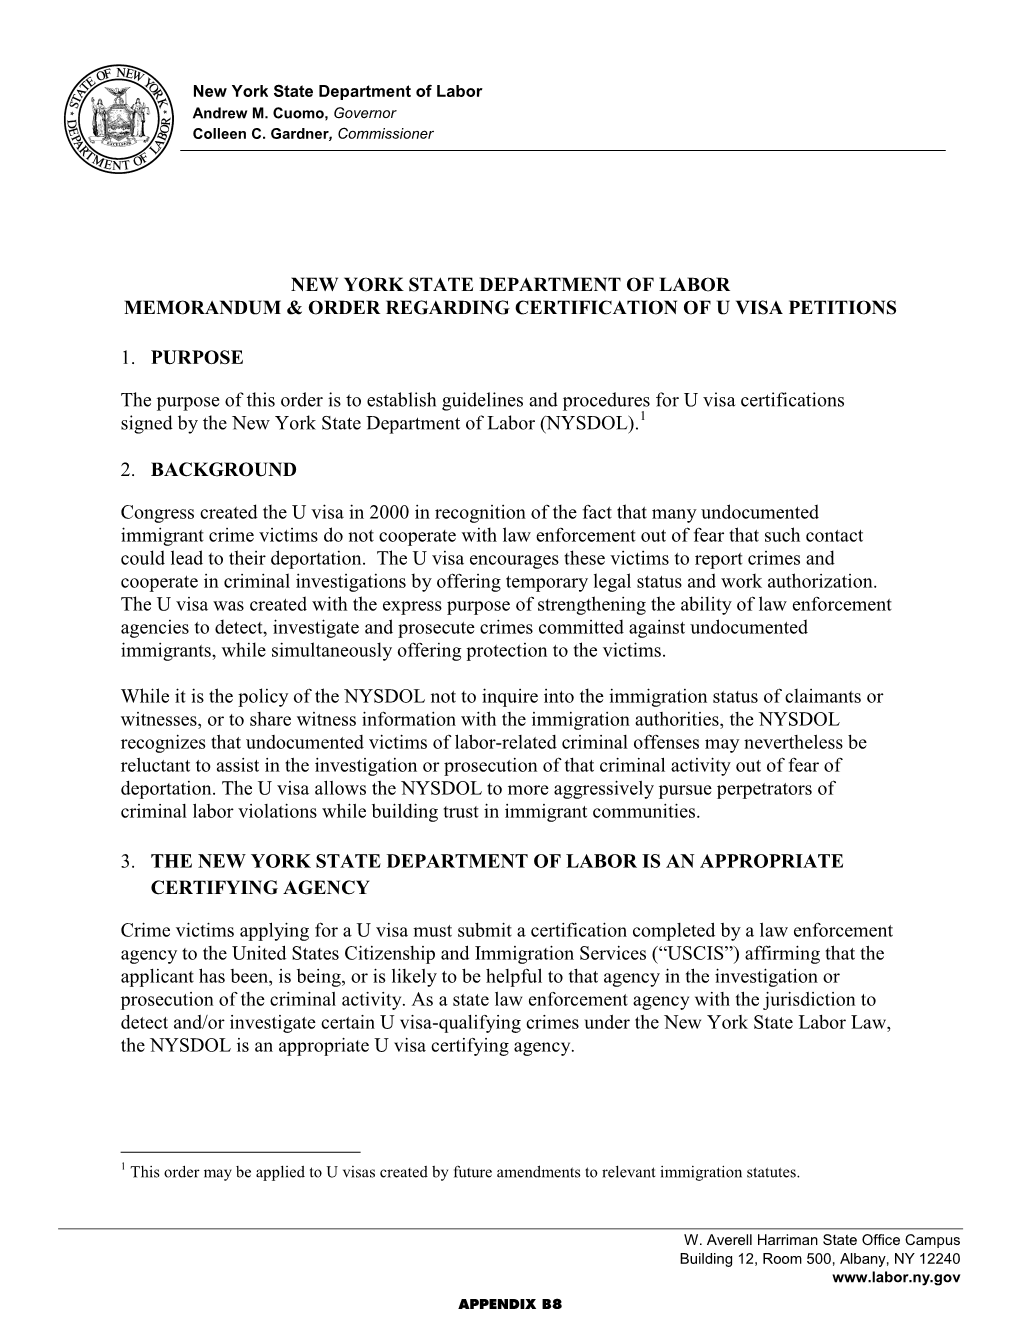 Memorandum and Order Regarding Certification of U Visa Petitions